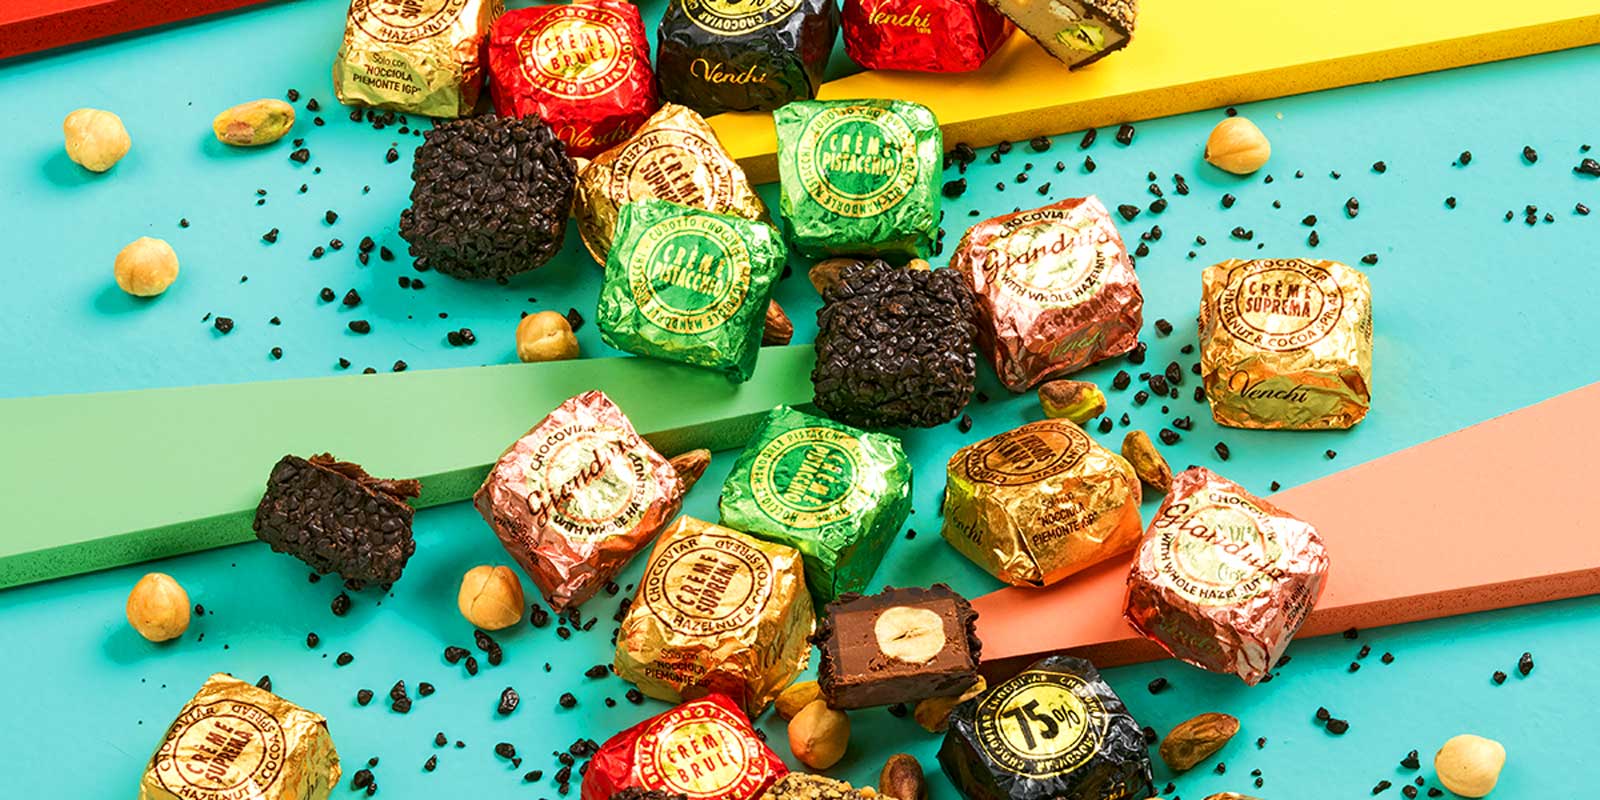 Venchi chocolaatjes en pralines uit Piemonte Heerlijke, zelfgemaakte en natuurlijke recepten, ontworpen om u te helpen genieten.
Sinds 1878 bieden wij elke dag momenten van vreugde in perfecte Italiaanse stijl, we denken aan uw welzijn.